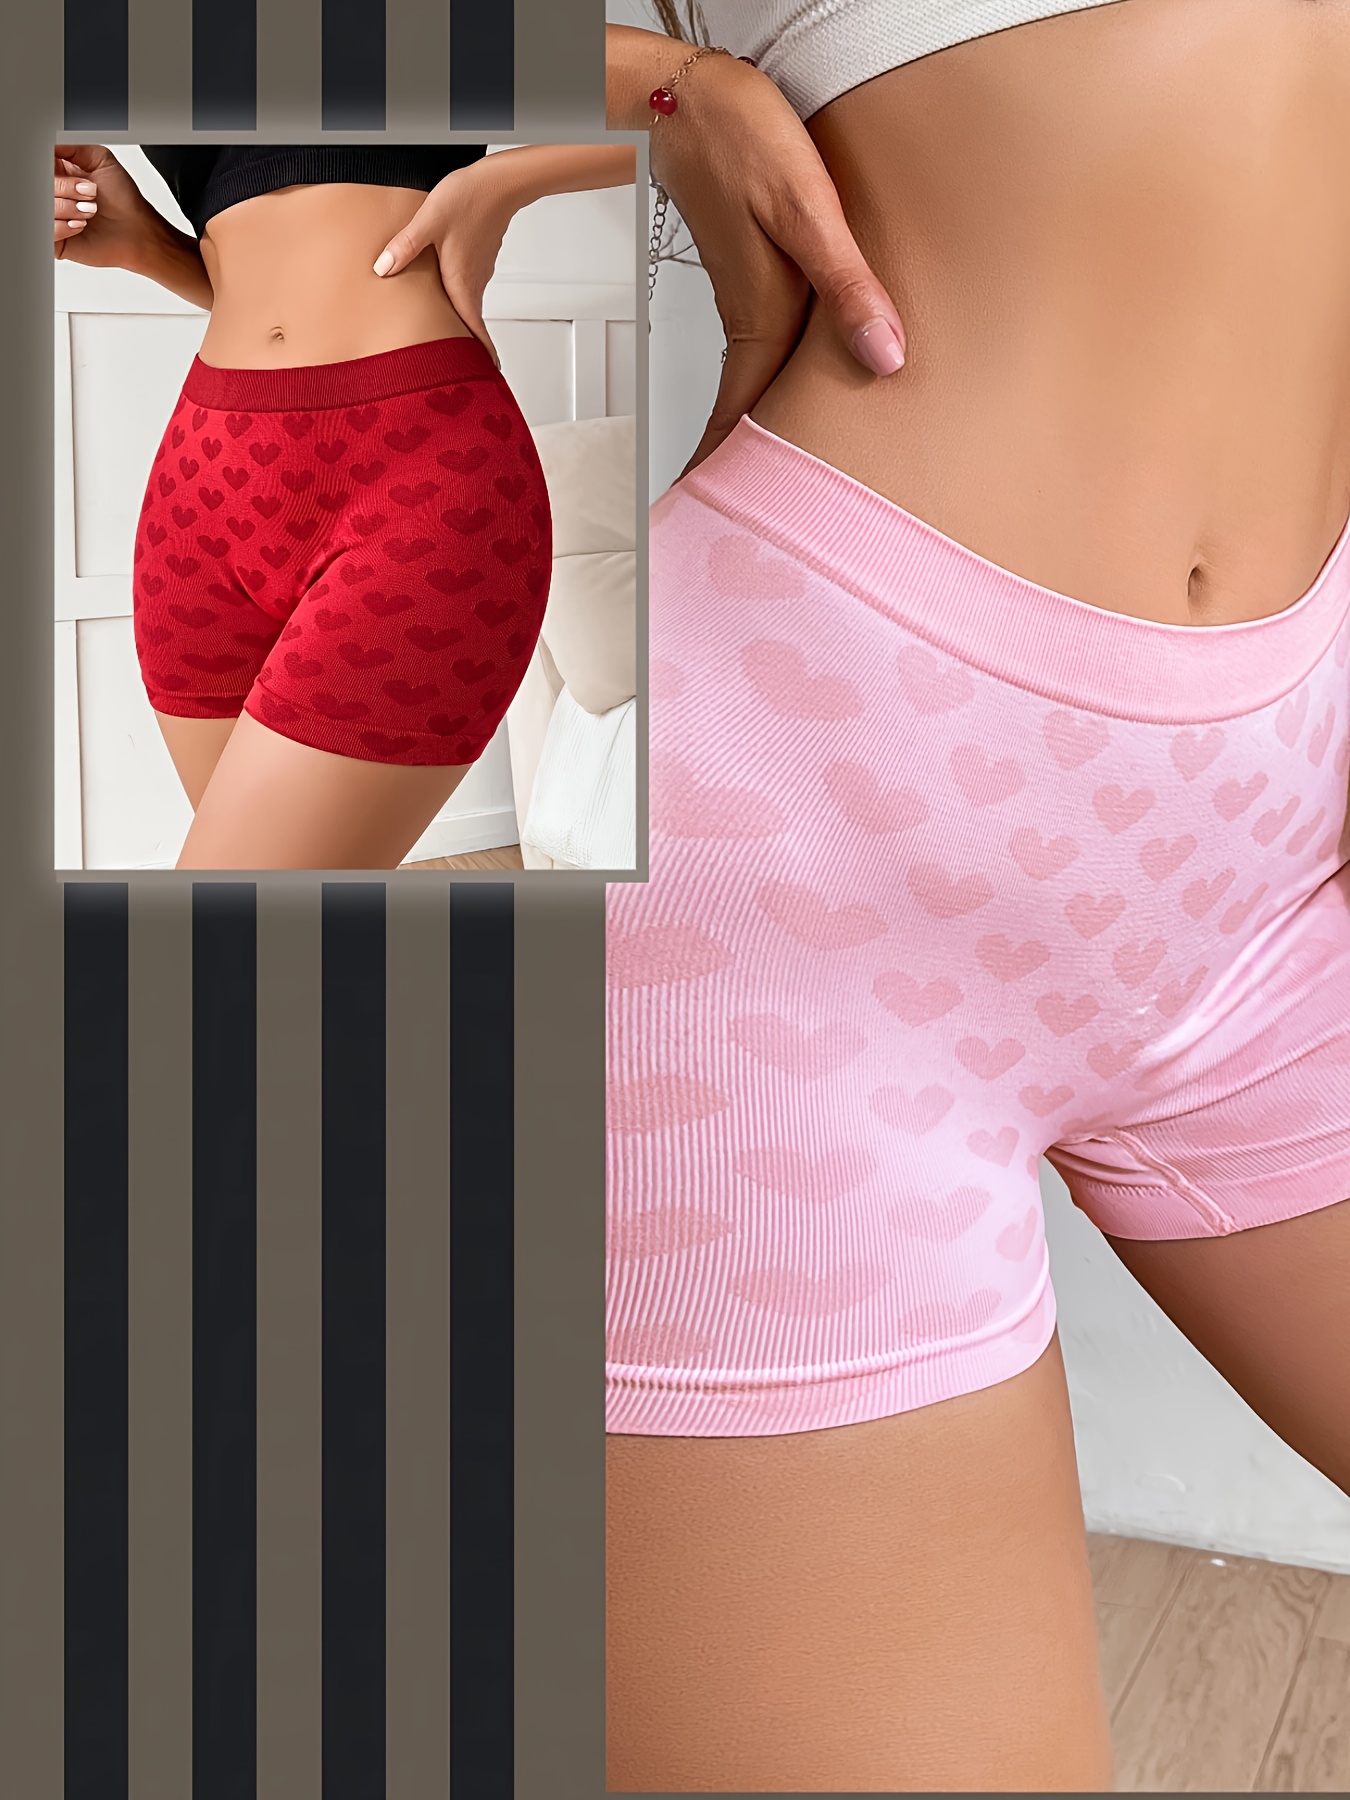 Heart Print Mesh Boyshort Panties, Hot & Cute Semi-sheer Bow Panties,  Women's Lingerie & Underwear